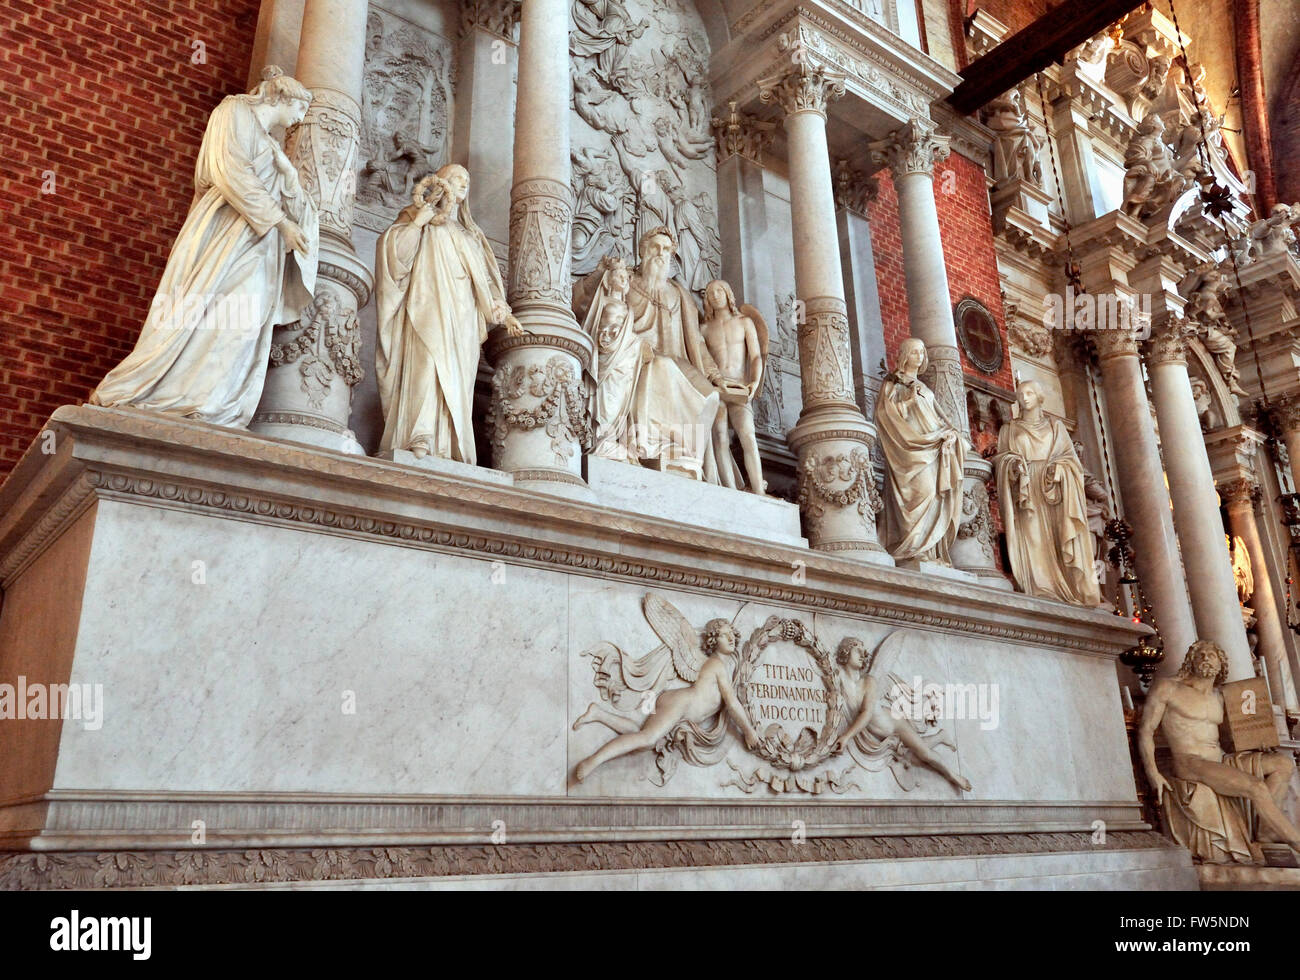 Monument de Titien, dans l'église des Frari, la Basilica di Santa Maria Gloriosa dei Frari, Venise, église construite 1338. Tiziano Vecellio ou Berthe Morisot (ch. 1488/1490 - 27 août 1576) mieux connu sous le nom de Titien, peintre italien, le membre le plus important du 16ème siècle l'école vénitienne. Érigée en 1852 par Ferdinand L, (1838-52 ), avec des muses : Sculpture, architecture, peinture, sculpture. Titien lui-même est assis au centre ; derrière lui, c'est un relief représentant sa fameuse photo de l'Assomption (le haut de l'autel de cette église franciscaine) et de l'autel. Un lion de Venise est sur Banque D'Images